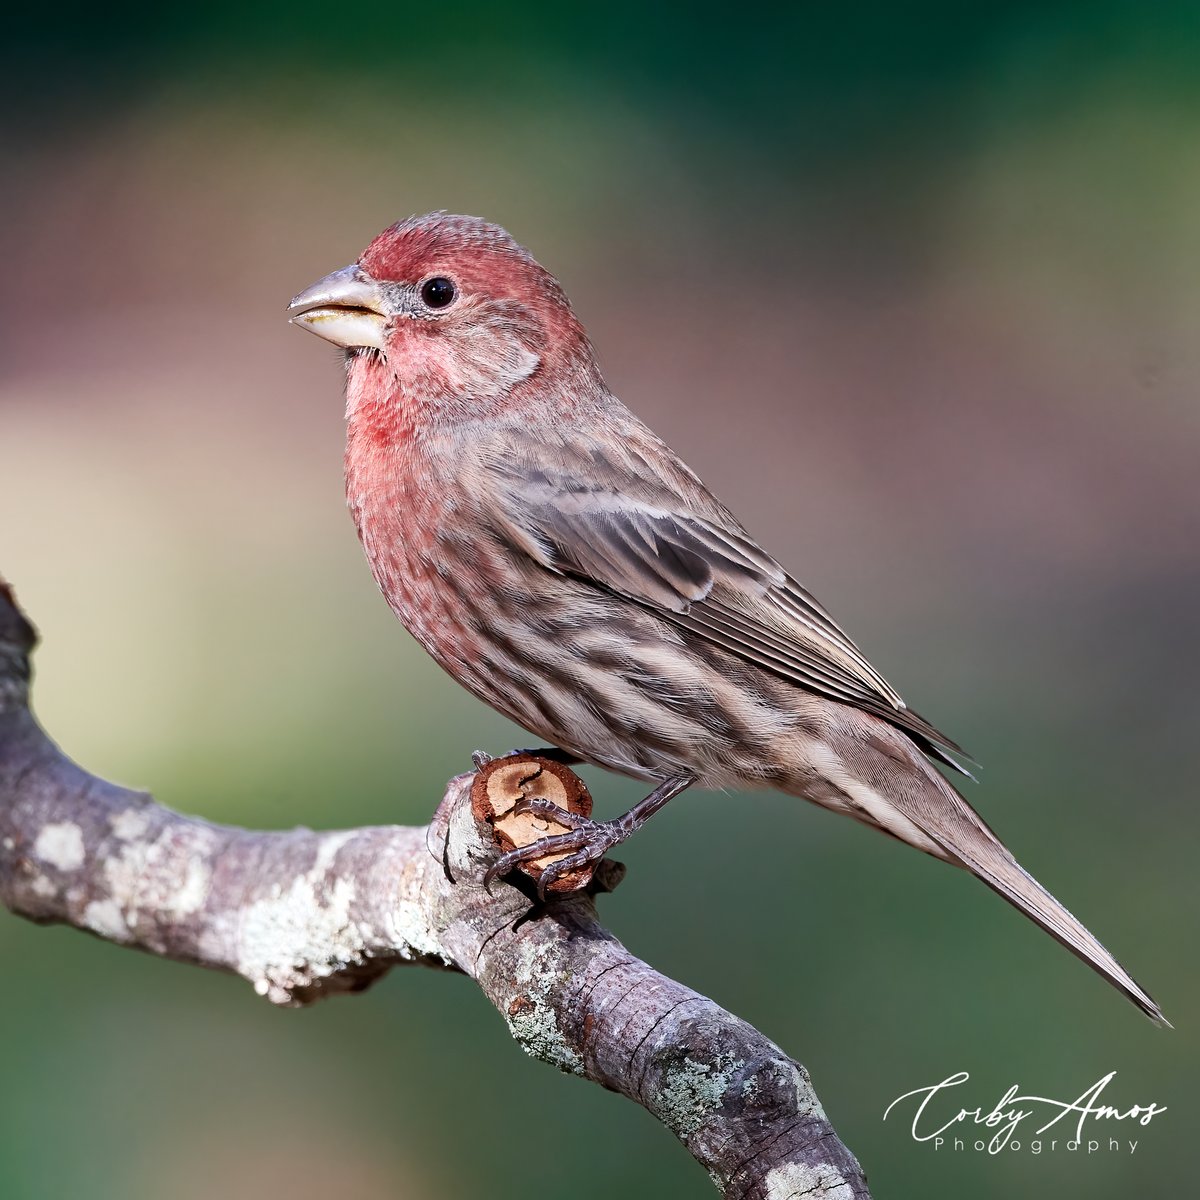 House Finch
.
.
#birdphotography #birdwatching #birding #BirdTwitter #twitterbirds #birdpics #housefinch